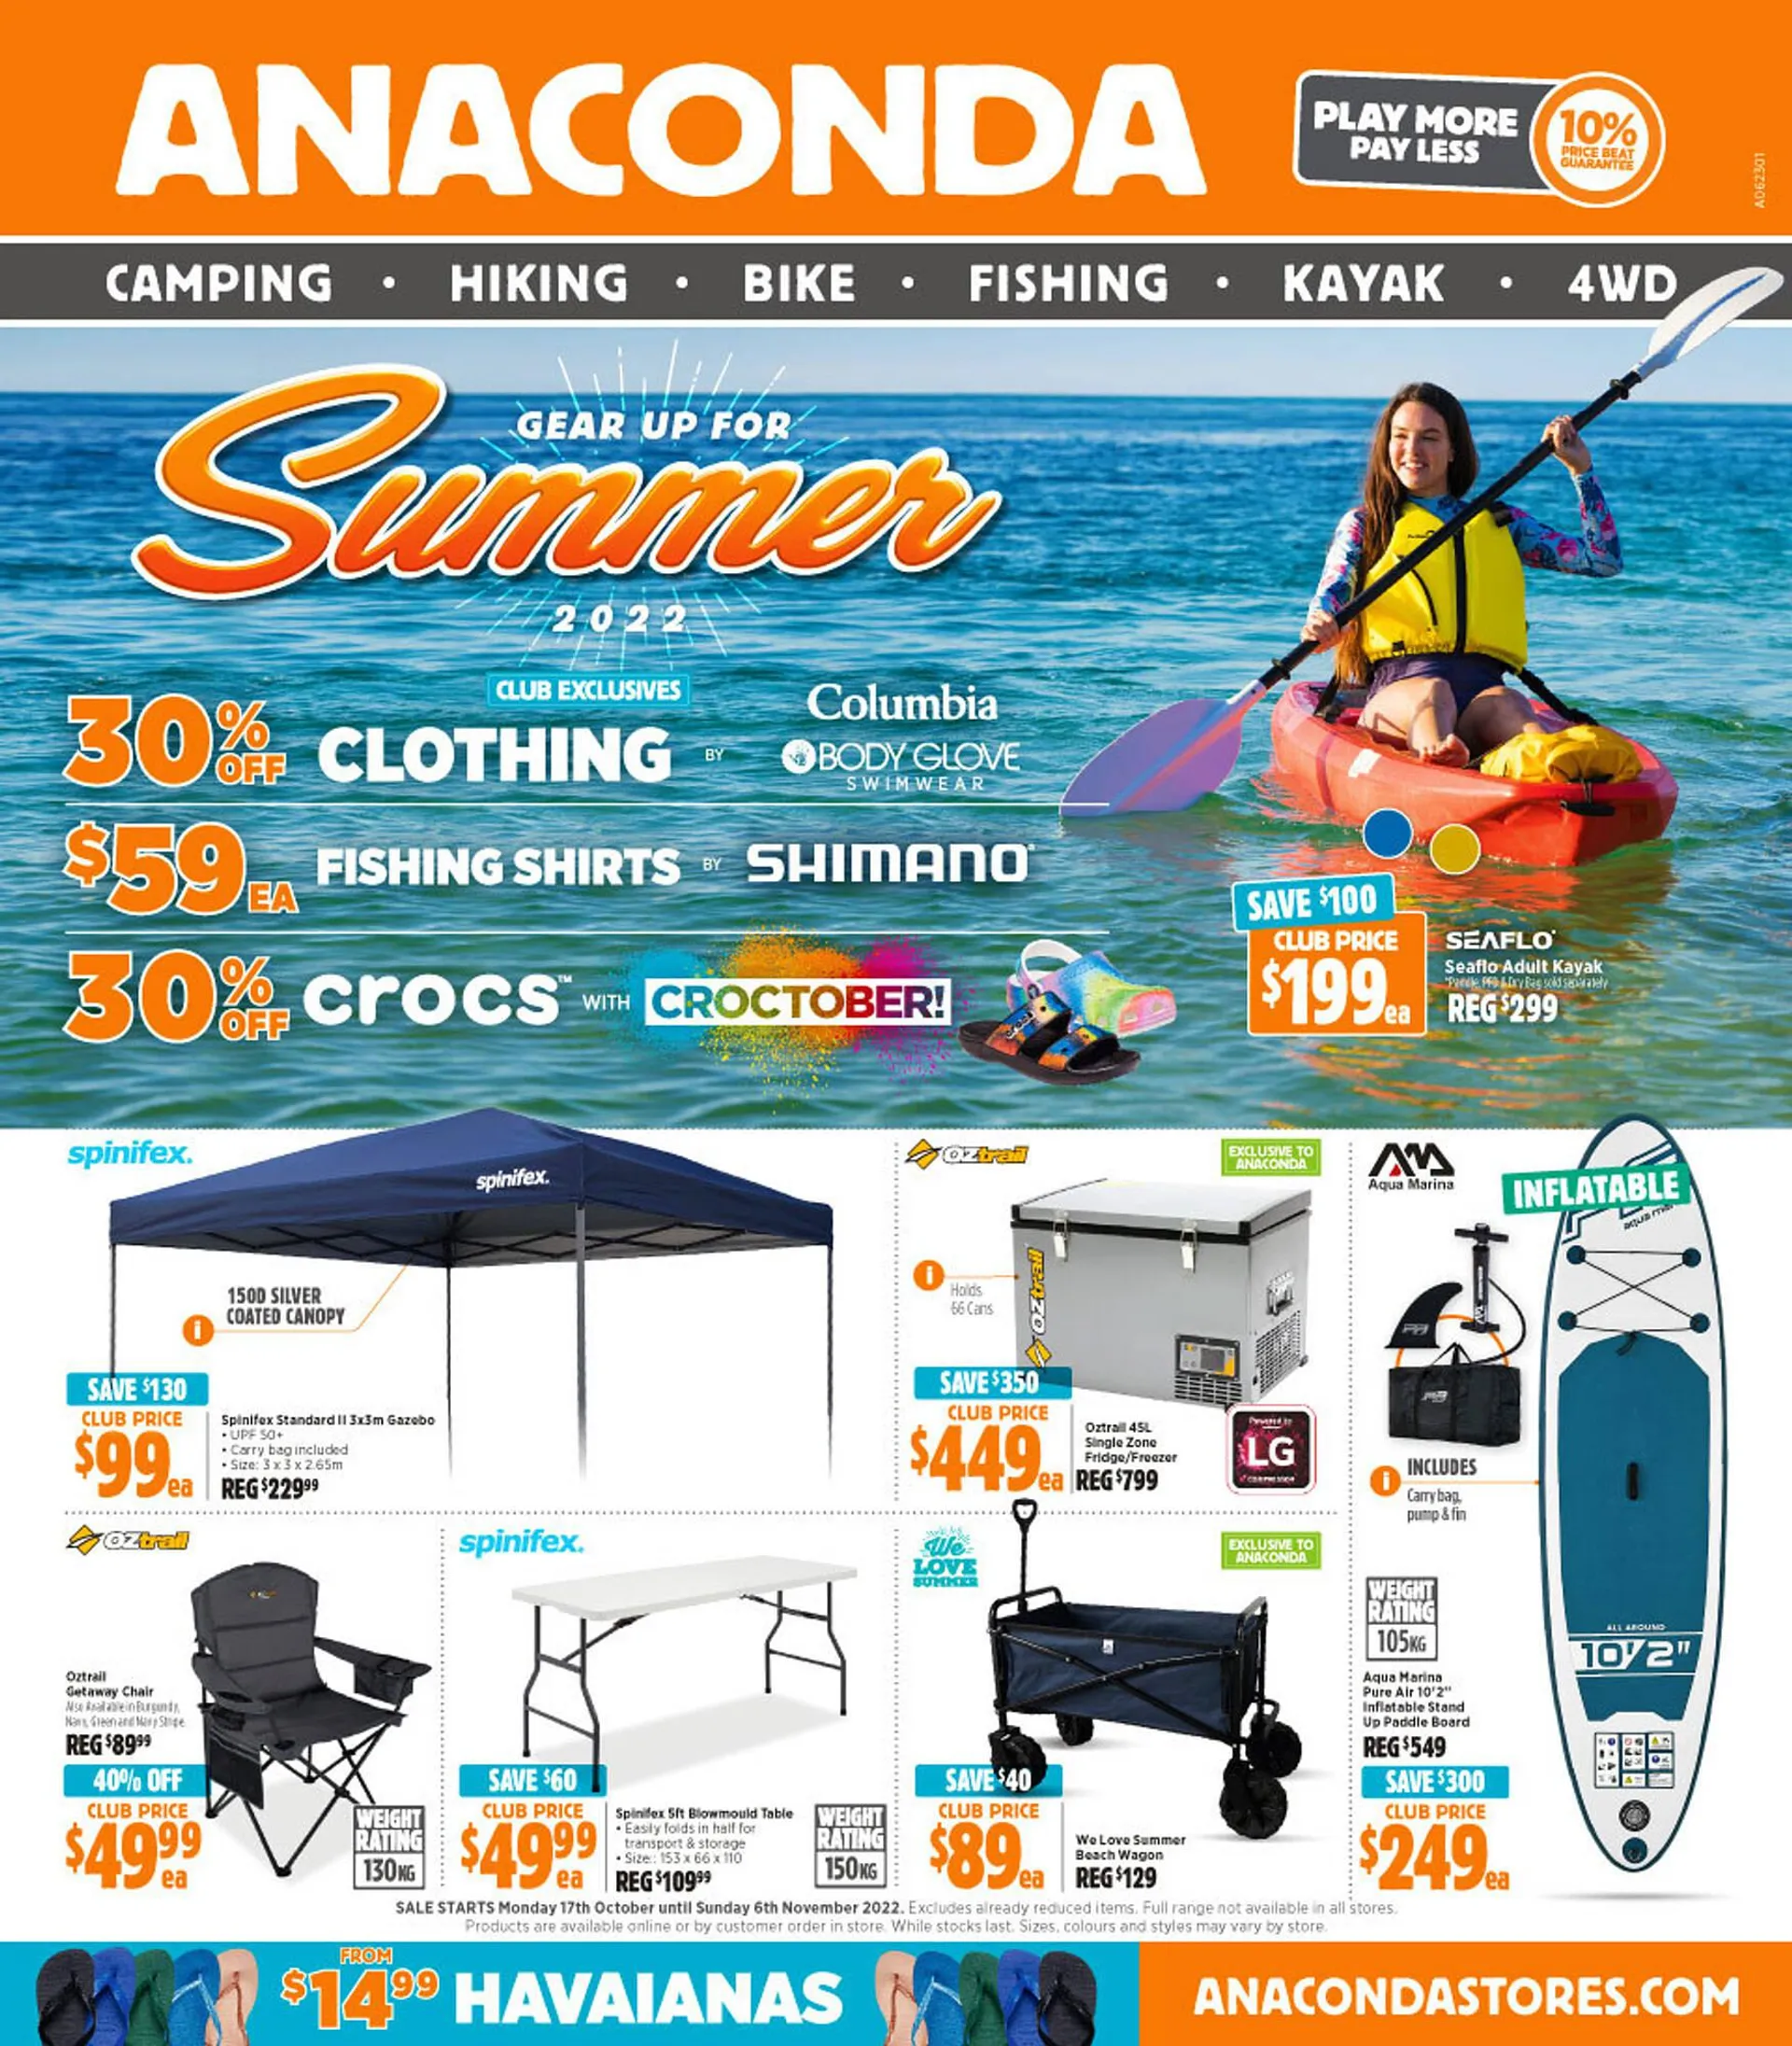 Anaconda catalogue - 1